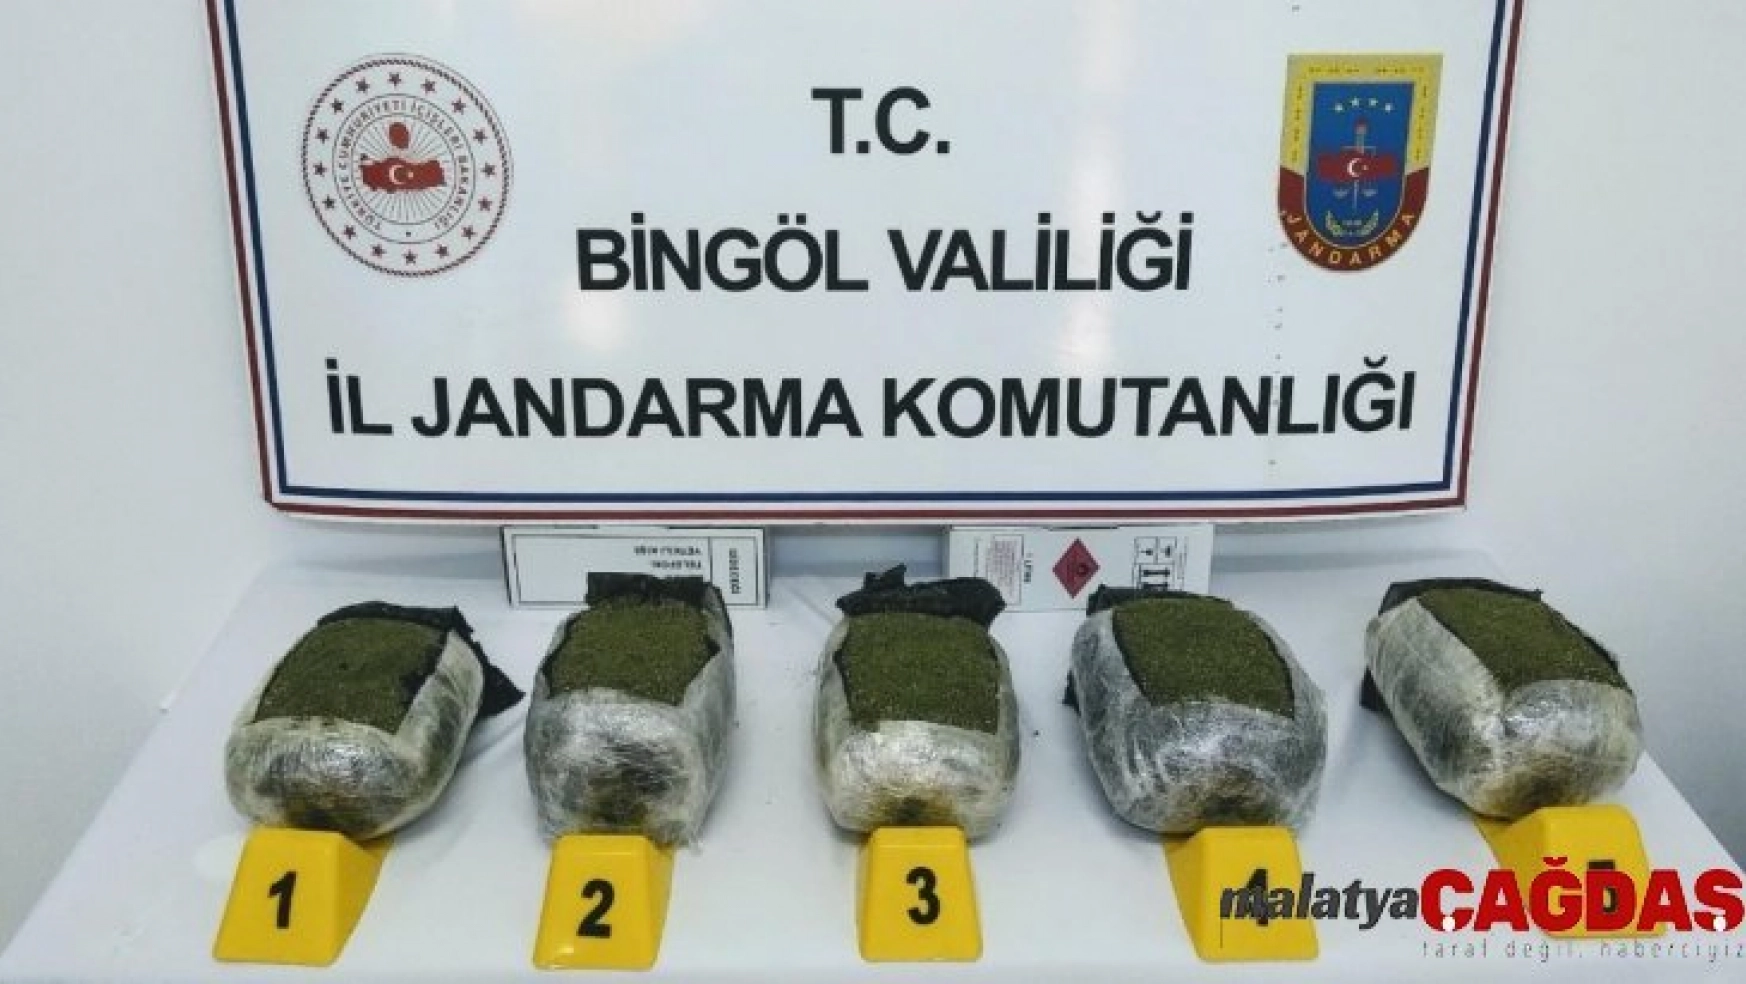 Bingöl'de uyuşturucu tacirleri termal kamerayla yakalandı